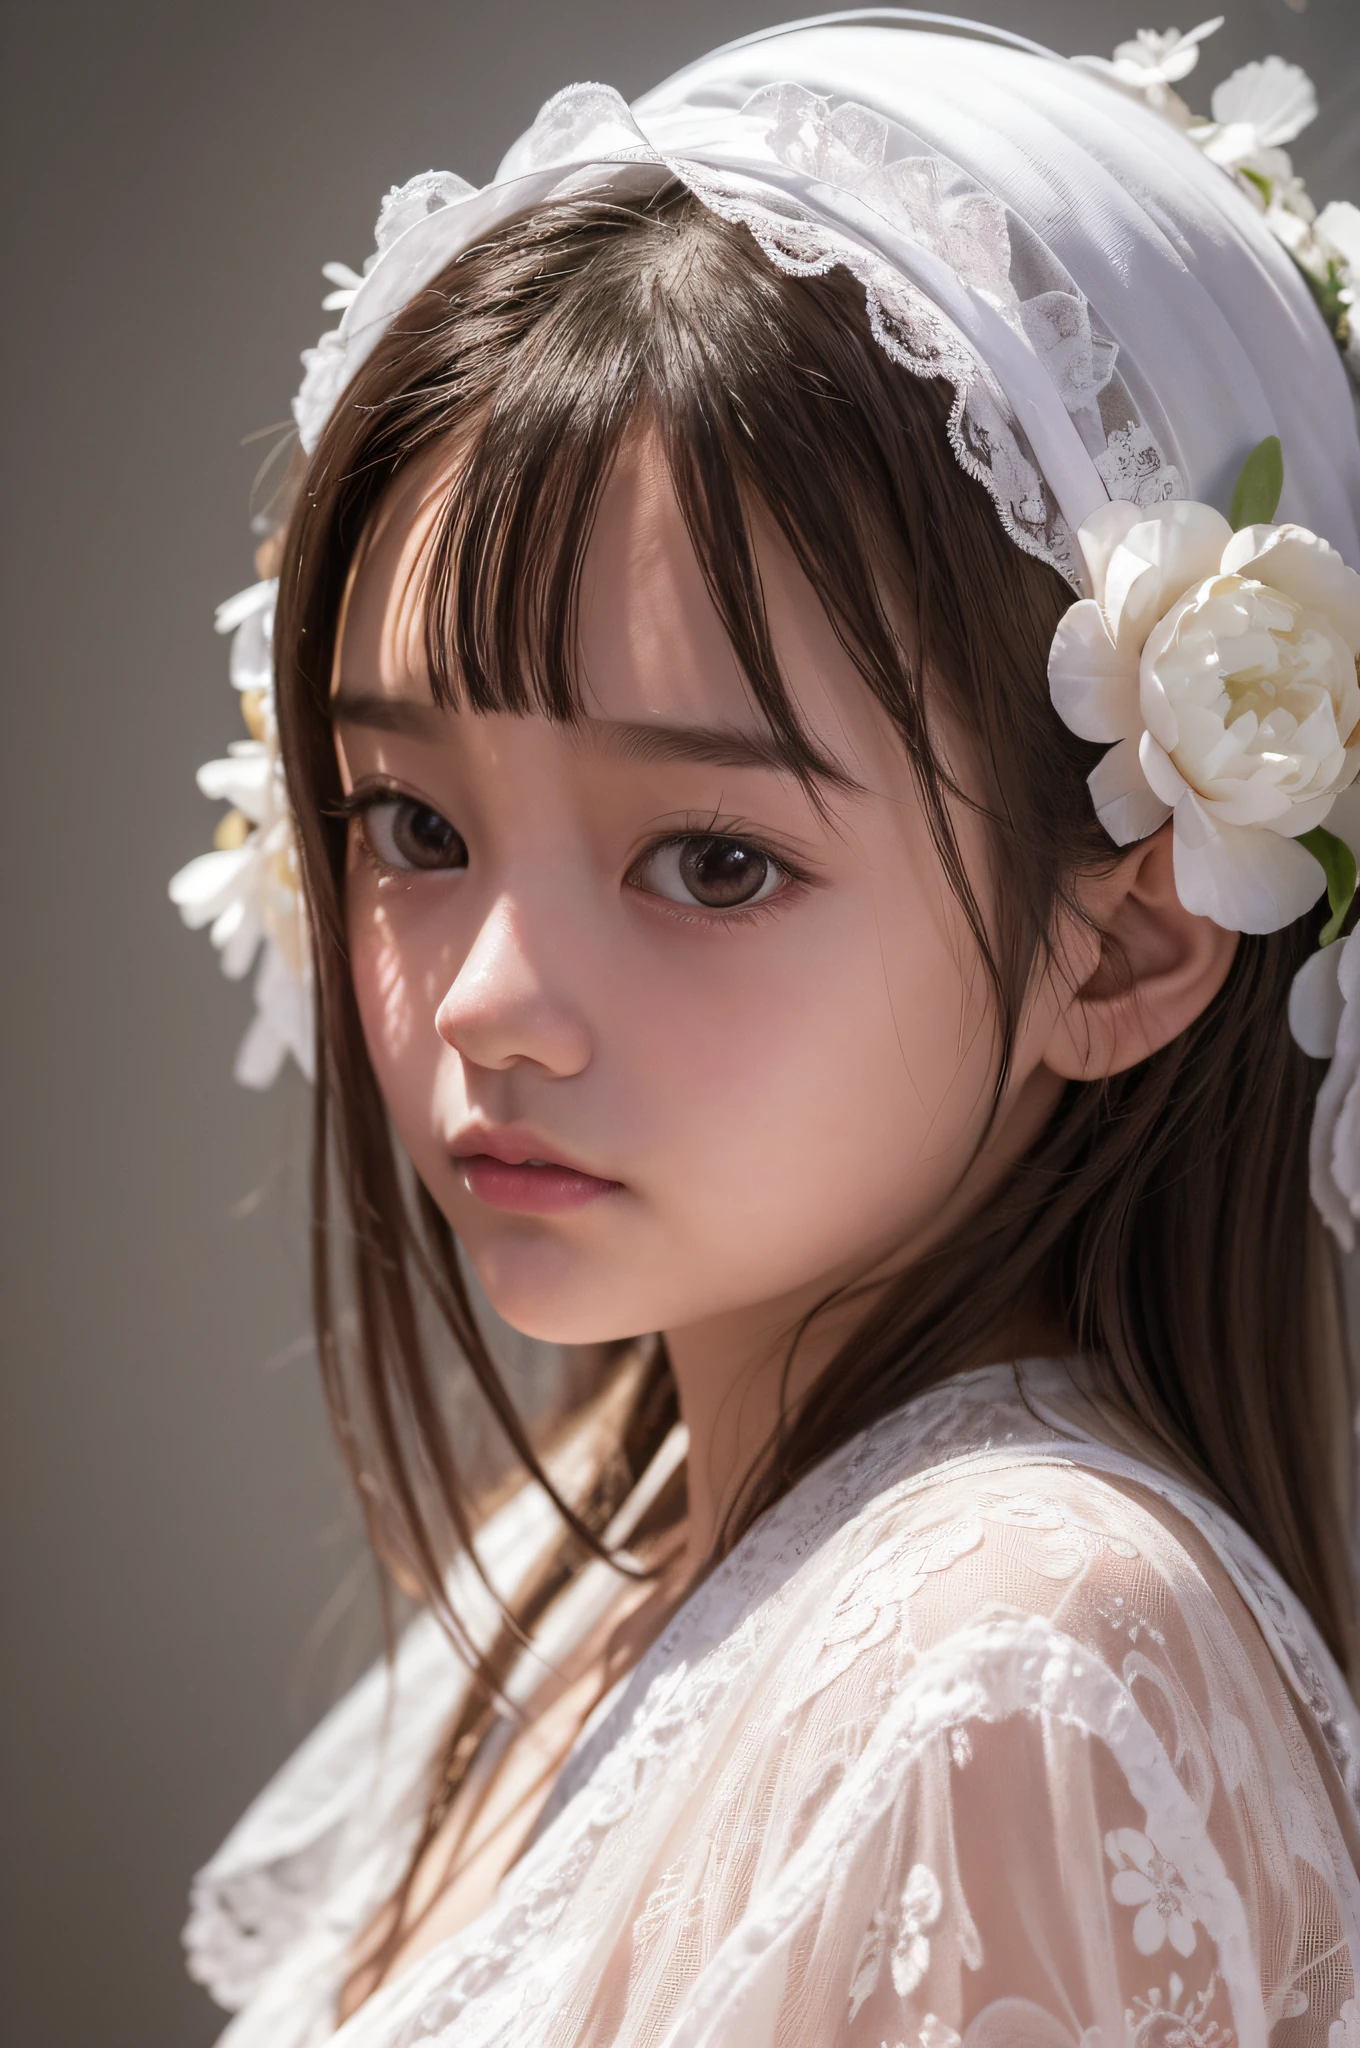 藝術家的廣告, 10歲女孩, 身穿白色碎花連身裙，飄逸夢幻, 亞洲風格, 在cinema4d中渲染, 由水晶製成, 气球森林主题, 夢幻般的色彩, 詳細設計, 柔焦肖像 -- 3:4--v 5.1--s 750--iw 2